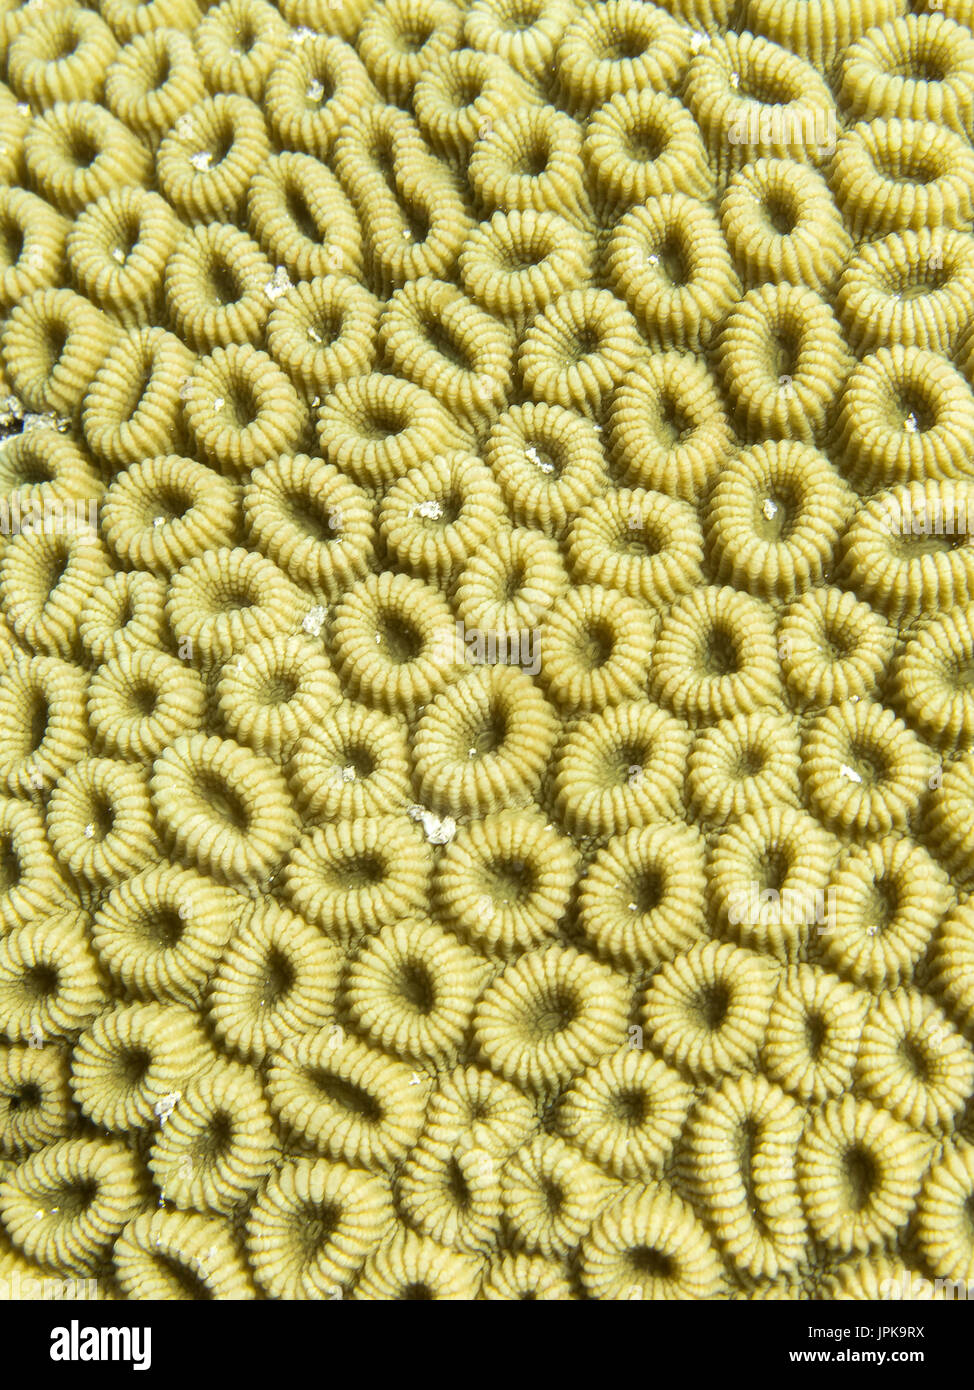 Brain coral Stock Photo